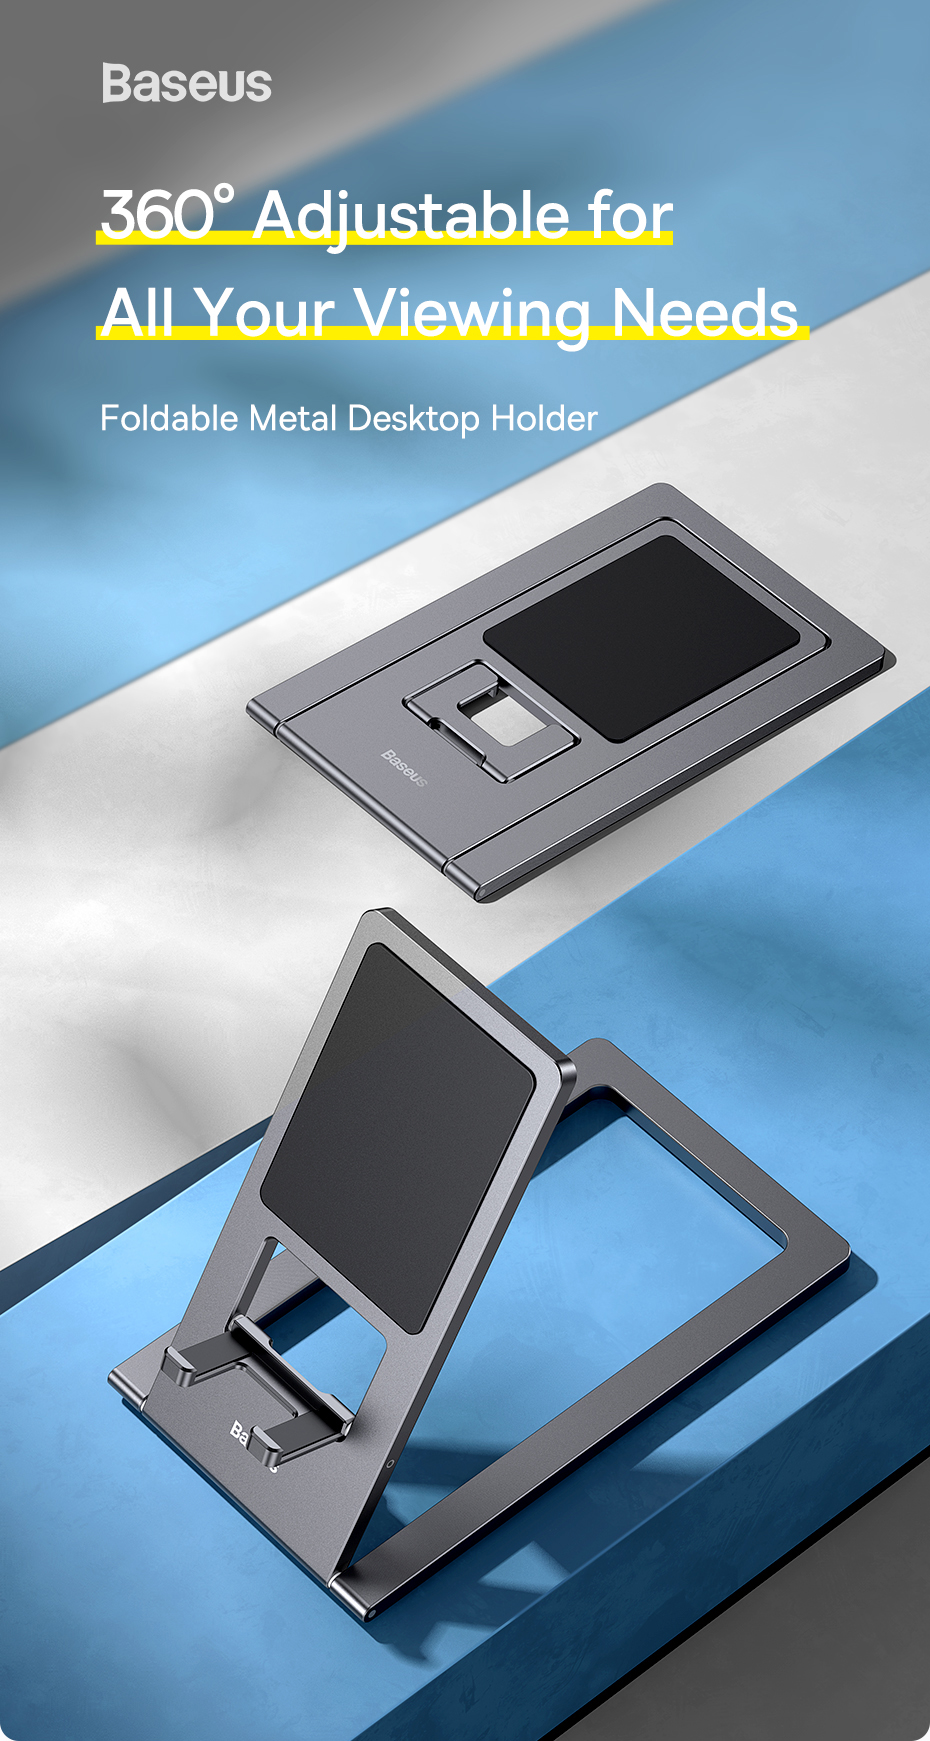 Baseus-Foldable-Metal-Desktop-PhoneTablet-Holder-Online-Learning-Live-Streaming-Desktop-Stand-For-iP-1932928-1